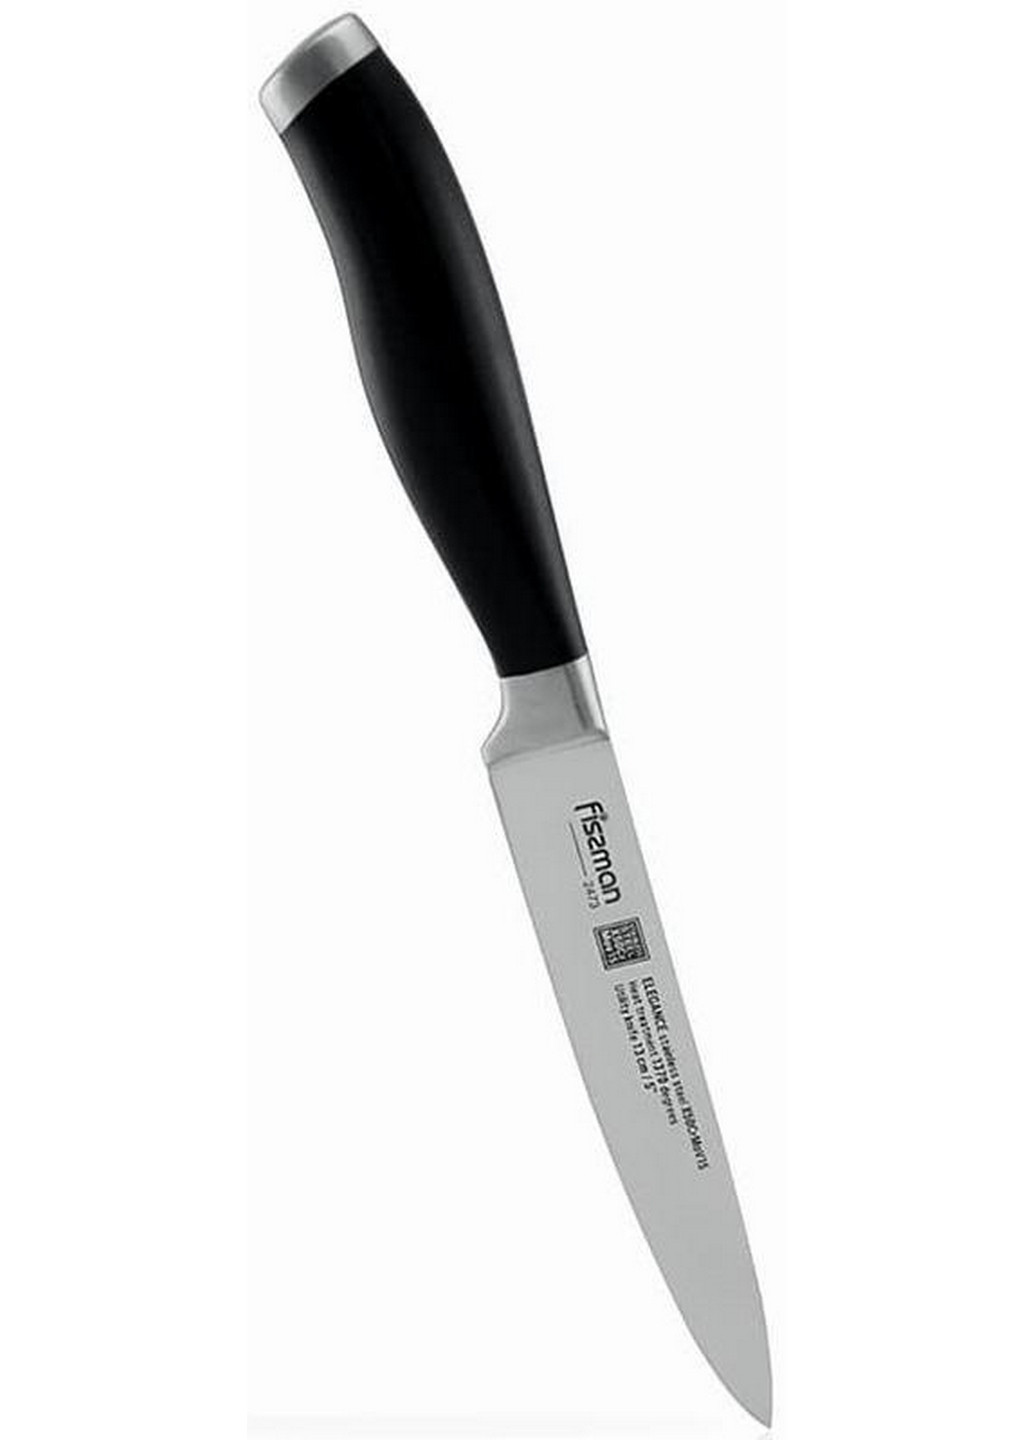 Нож универсальный клинка 13 см, рукоятки 11.5 см Fissman (275069835)